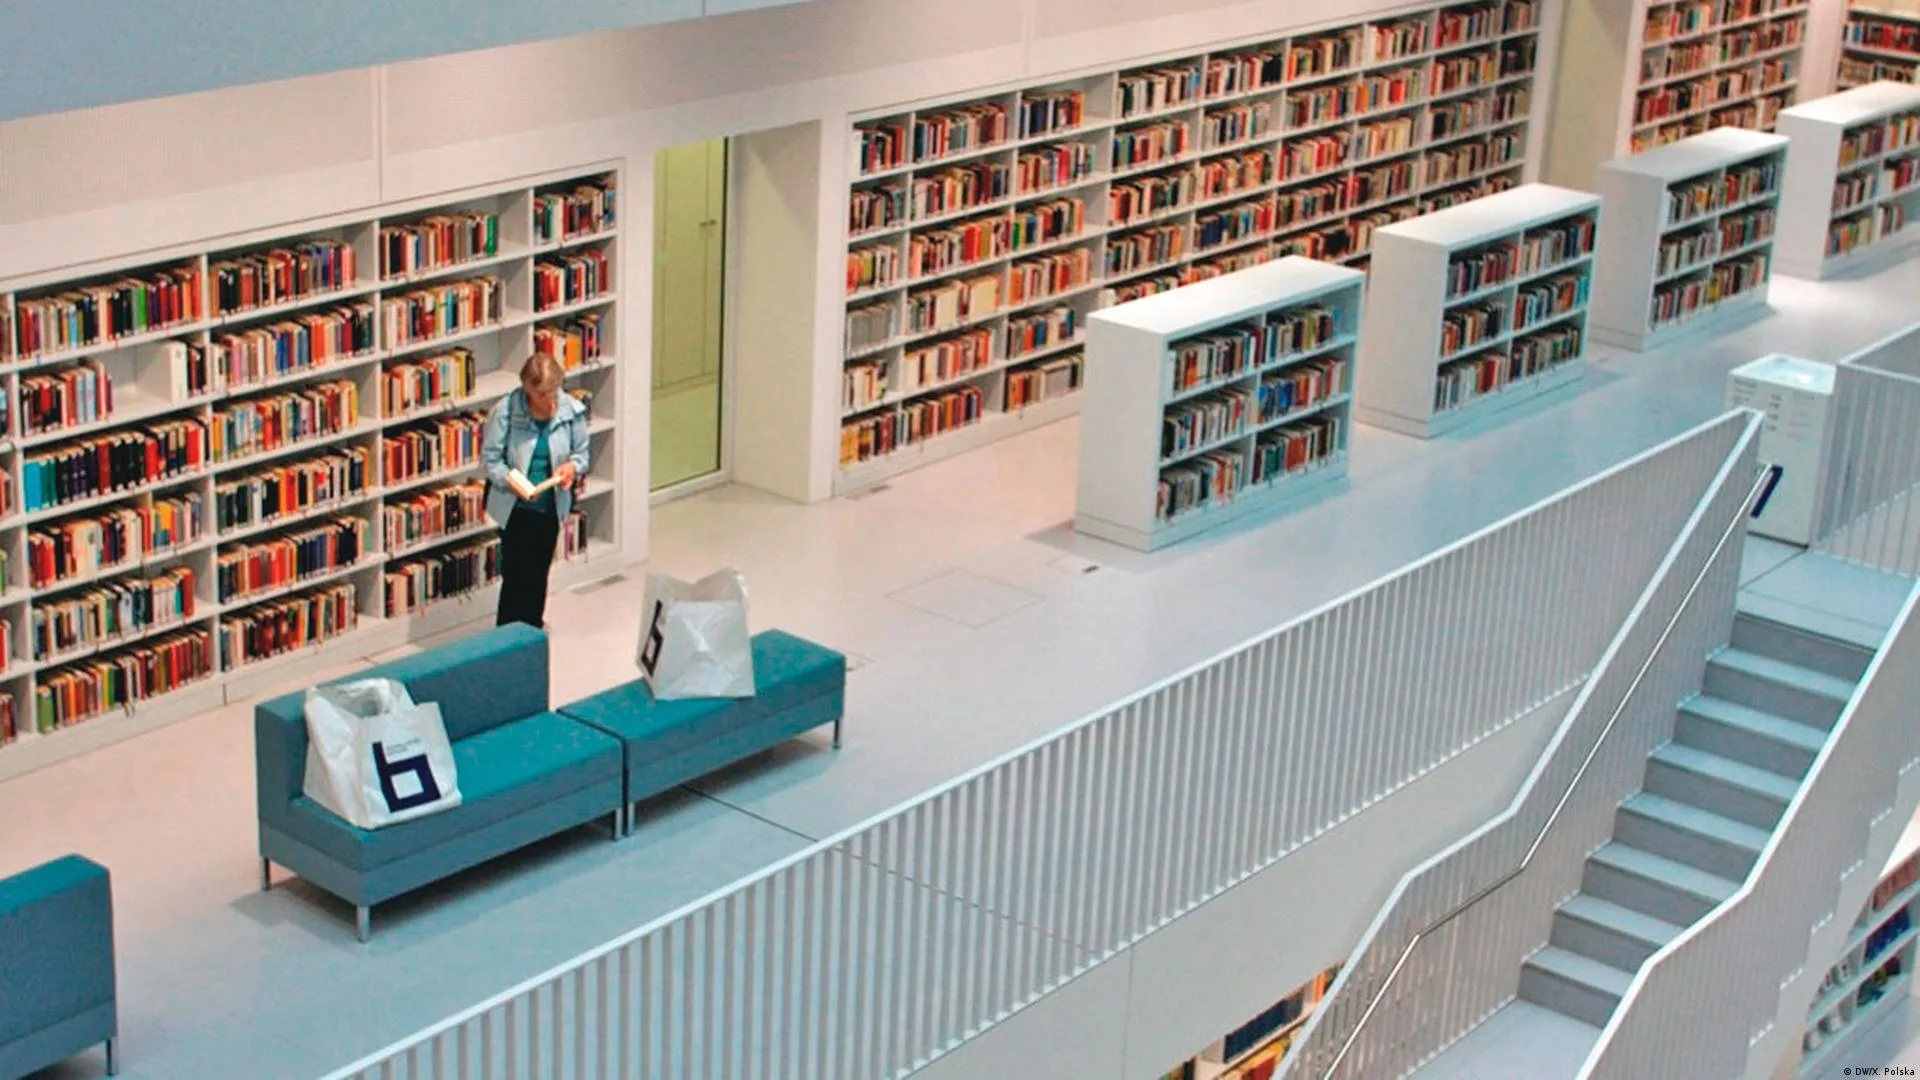 Городская библиотека Штутгарта. Библиотека в Германии. Библиотека в Штутгарте Германия. Самая фотогеничная библиотека.